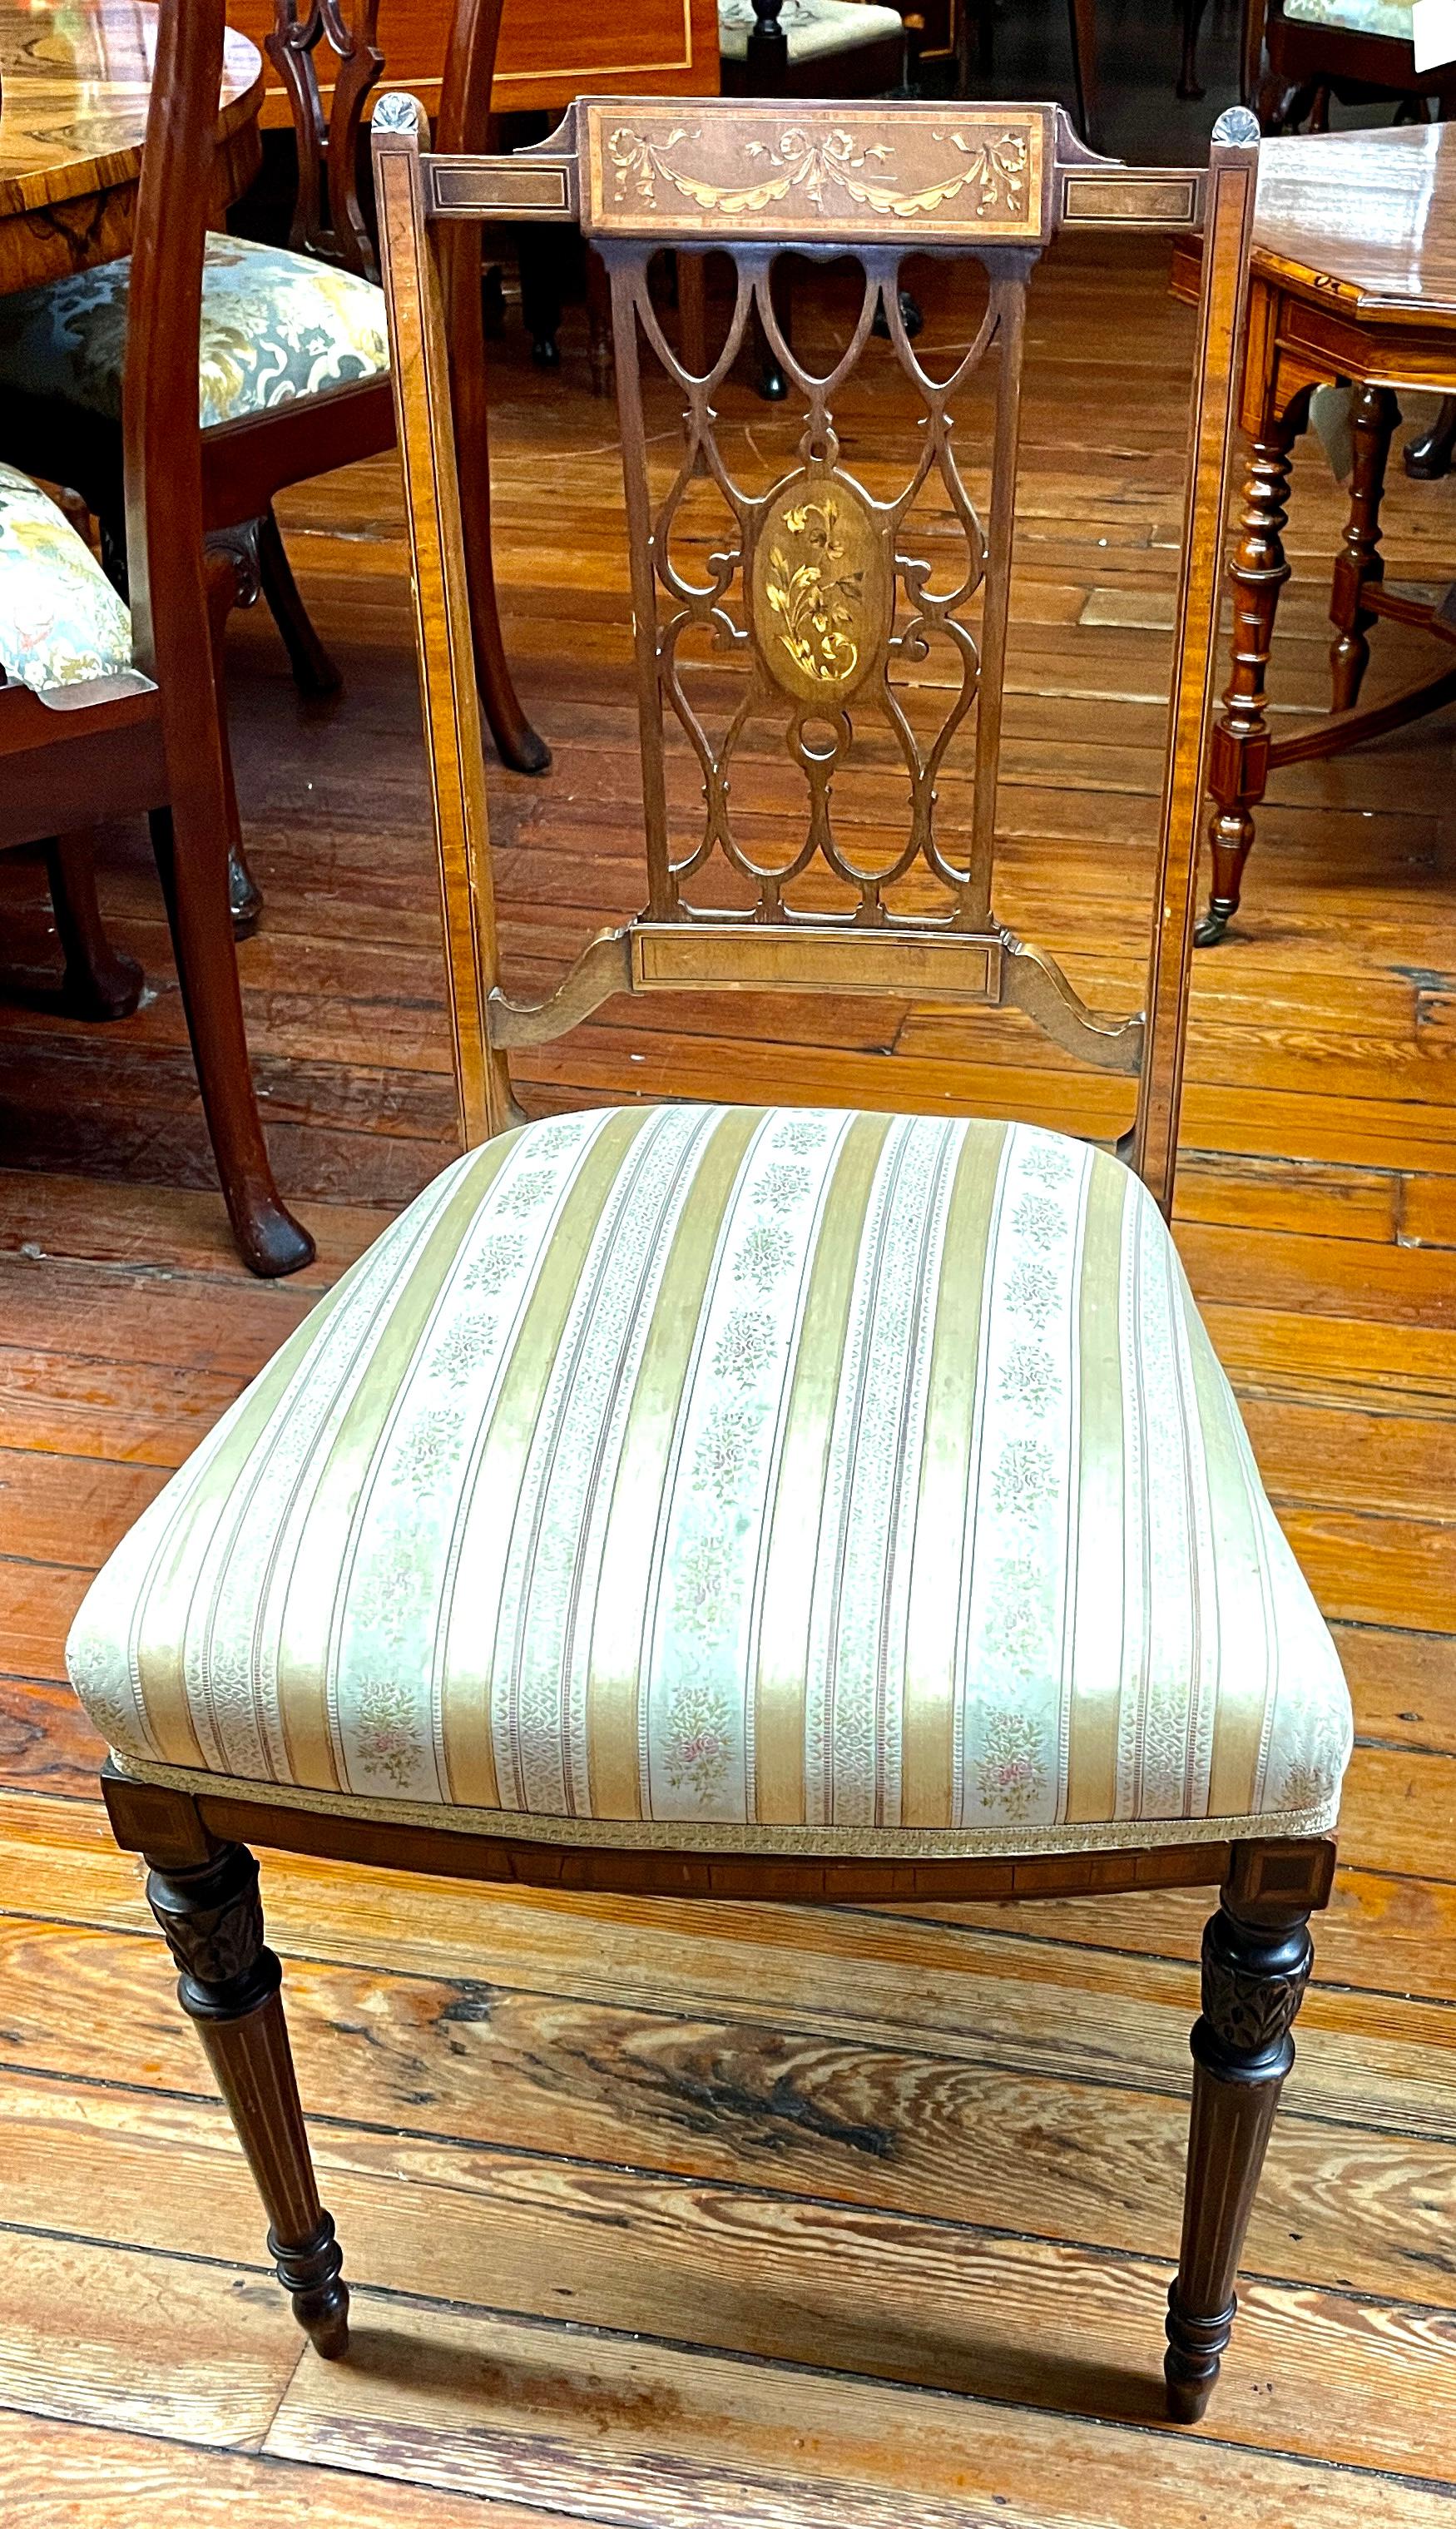 Fabuleux ensemble de quatre chaises d'appoint de taille réduite en acajou marqueté de style Sheraton, d'époque édouardienne, avec des sièges rembourrés (une partie de la toile autour du siège s'est détachée).  Ces chaises et la marqueterie sont